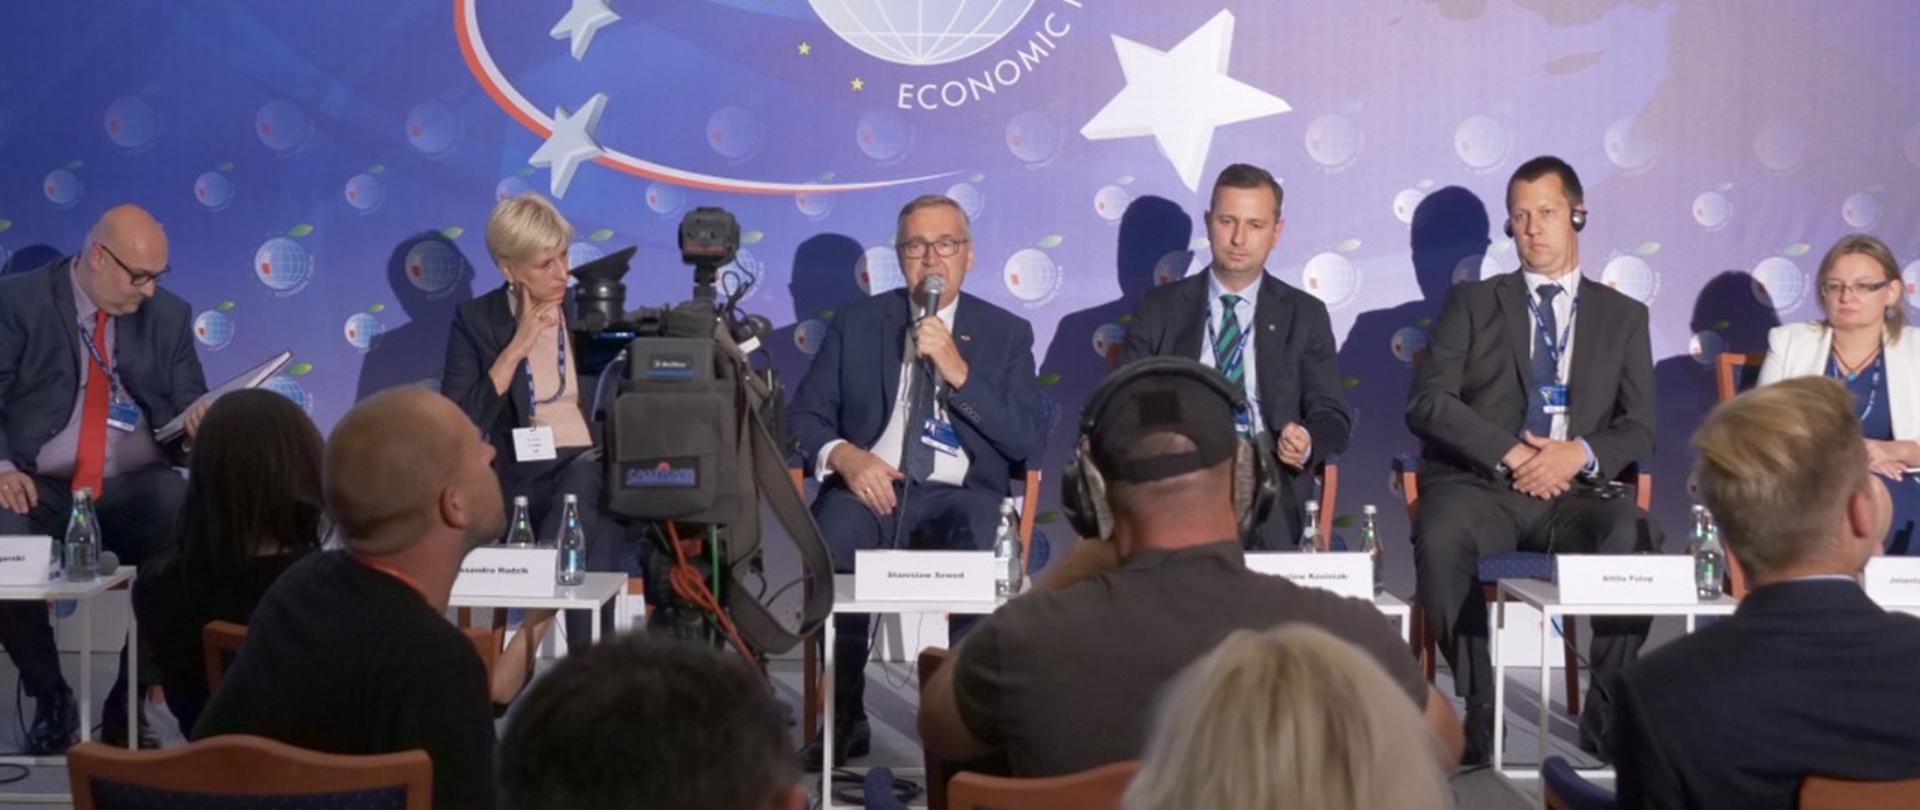 Zdjęcie debatujących. Wszyscy siedzą. W środku wiceminister Szwed. W ręku trzyma mikrofon. Przemawia do zgromadzonych.